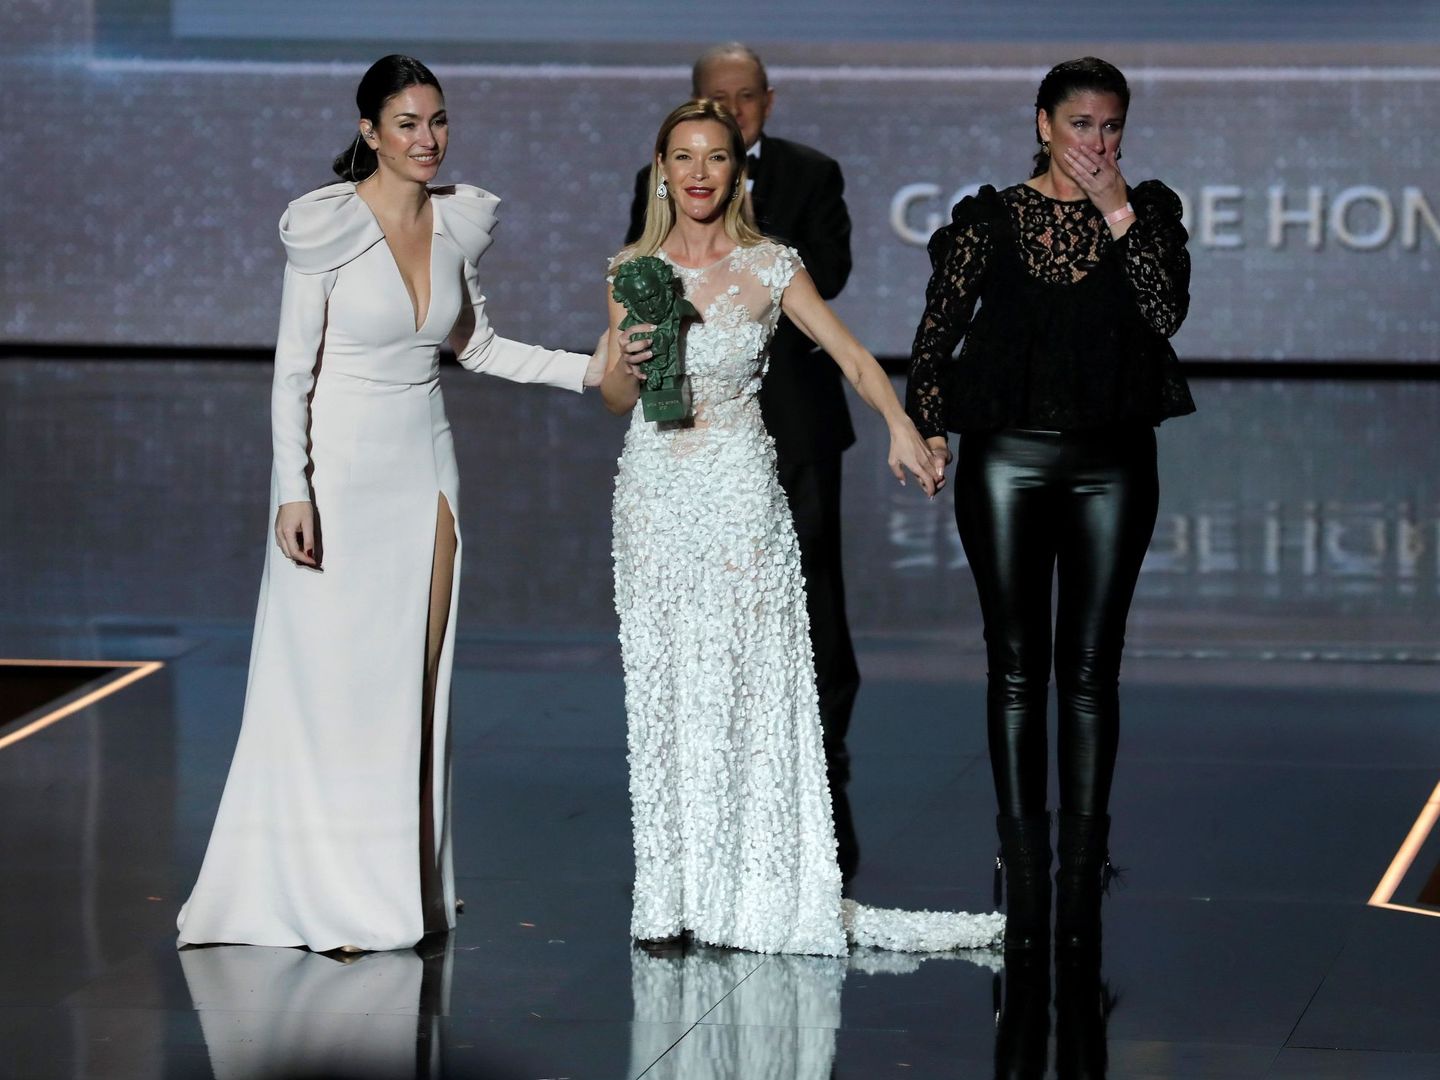 Las hijas de Pepa Flores 'Marisol', Celia Flores, María Esteve y Tamara Gades, reciben el 'Goya de honor' en nombre de su madre. (EFE)